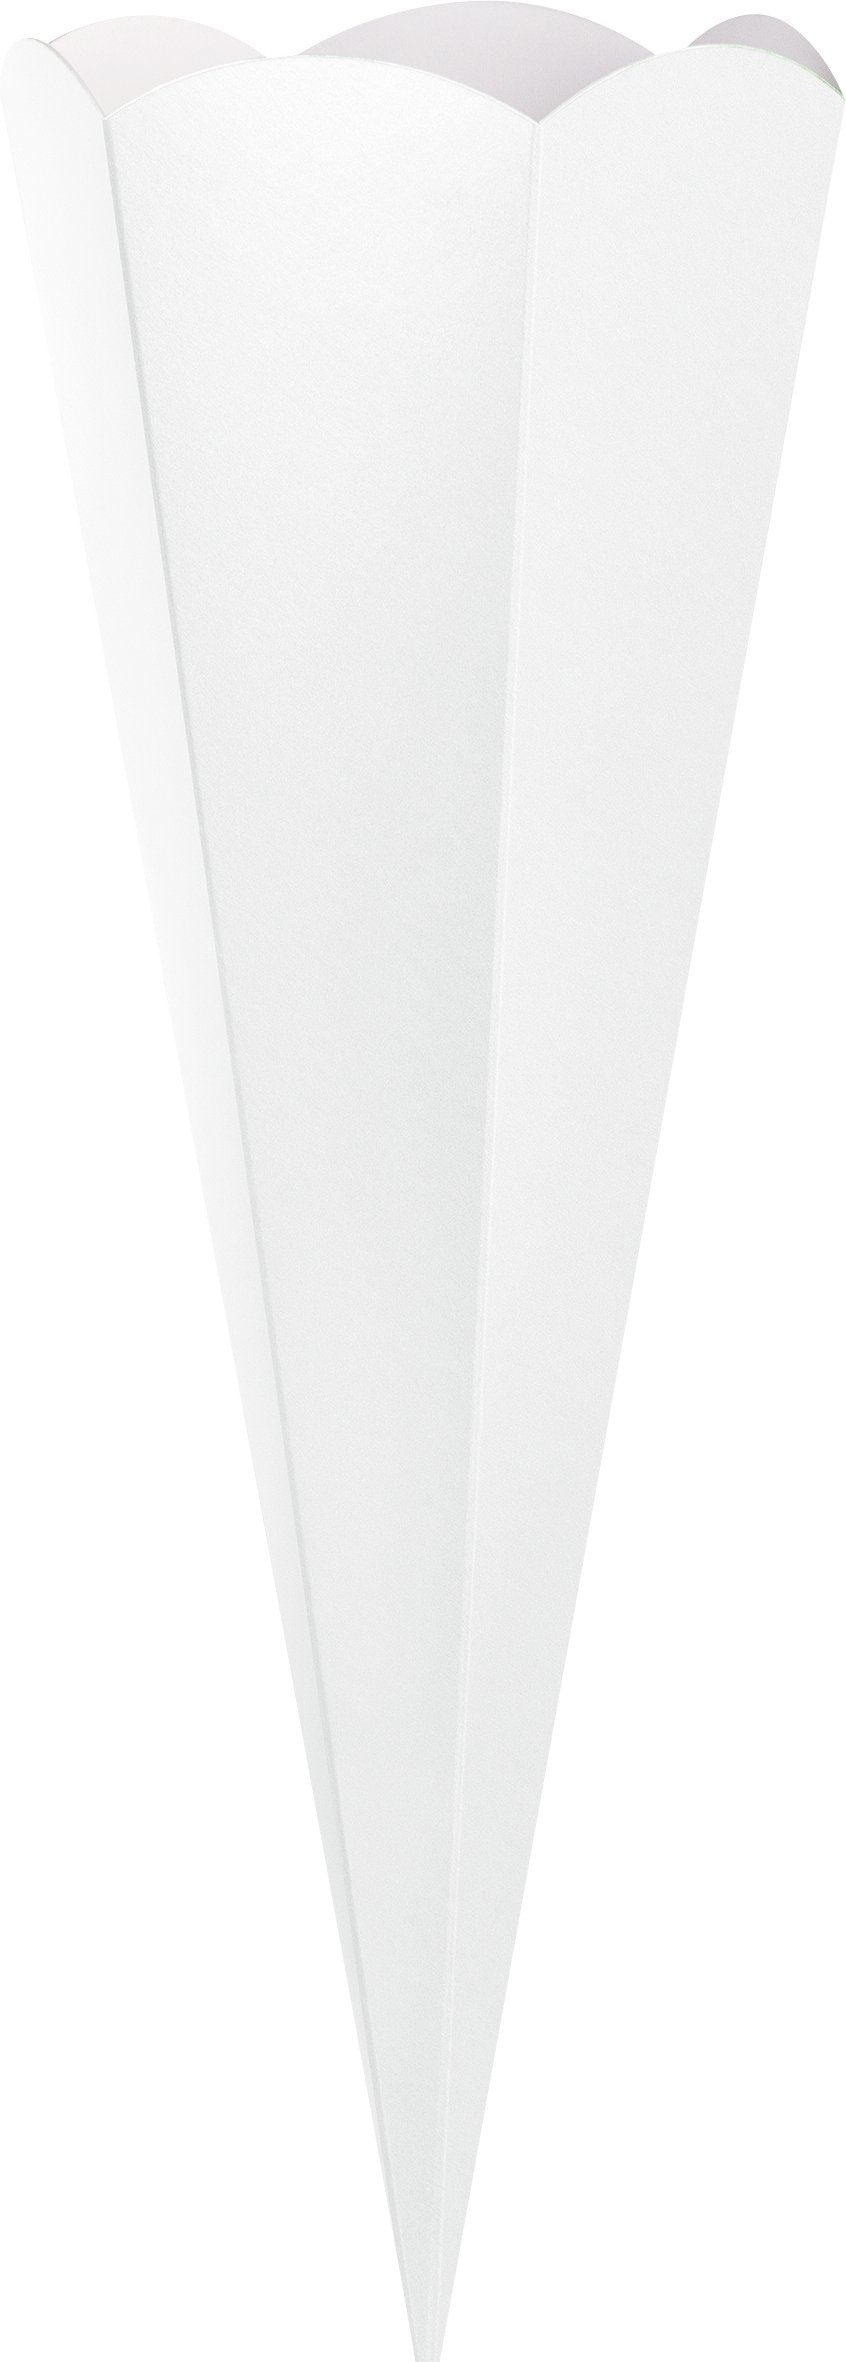 Heyda Schultüte Geschwister-Schultüten-Zuschnitt, 41 cm Weiß